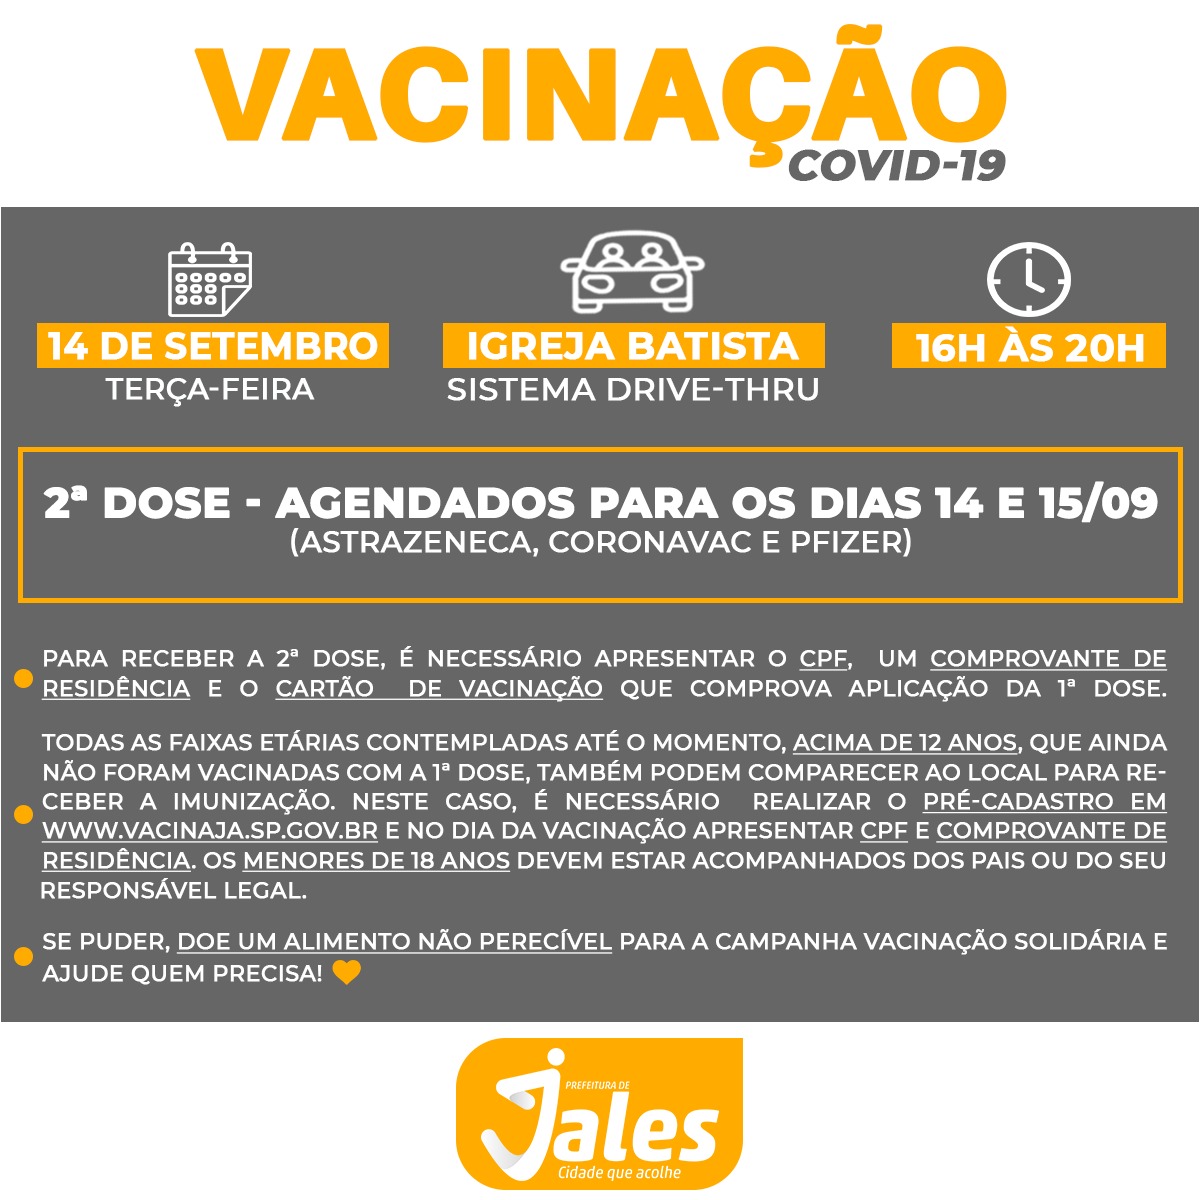 Jales - terça-feira, 14 de setembro, com aplicação da segunda dose das vacinas  AstraZeneca, CoronaVac e Pfizer